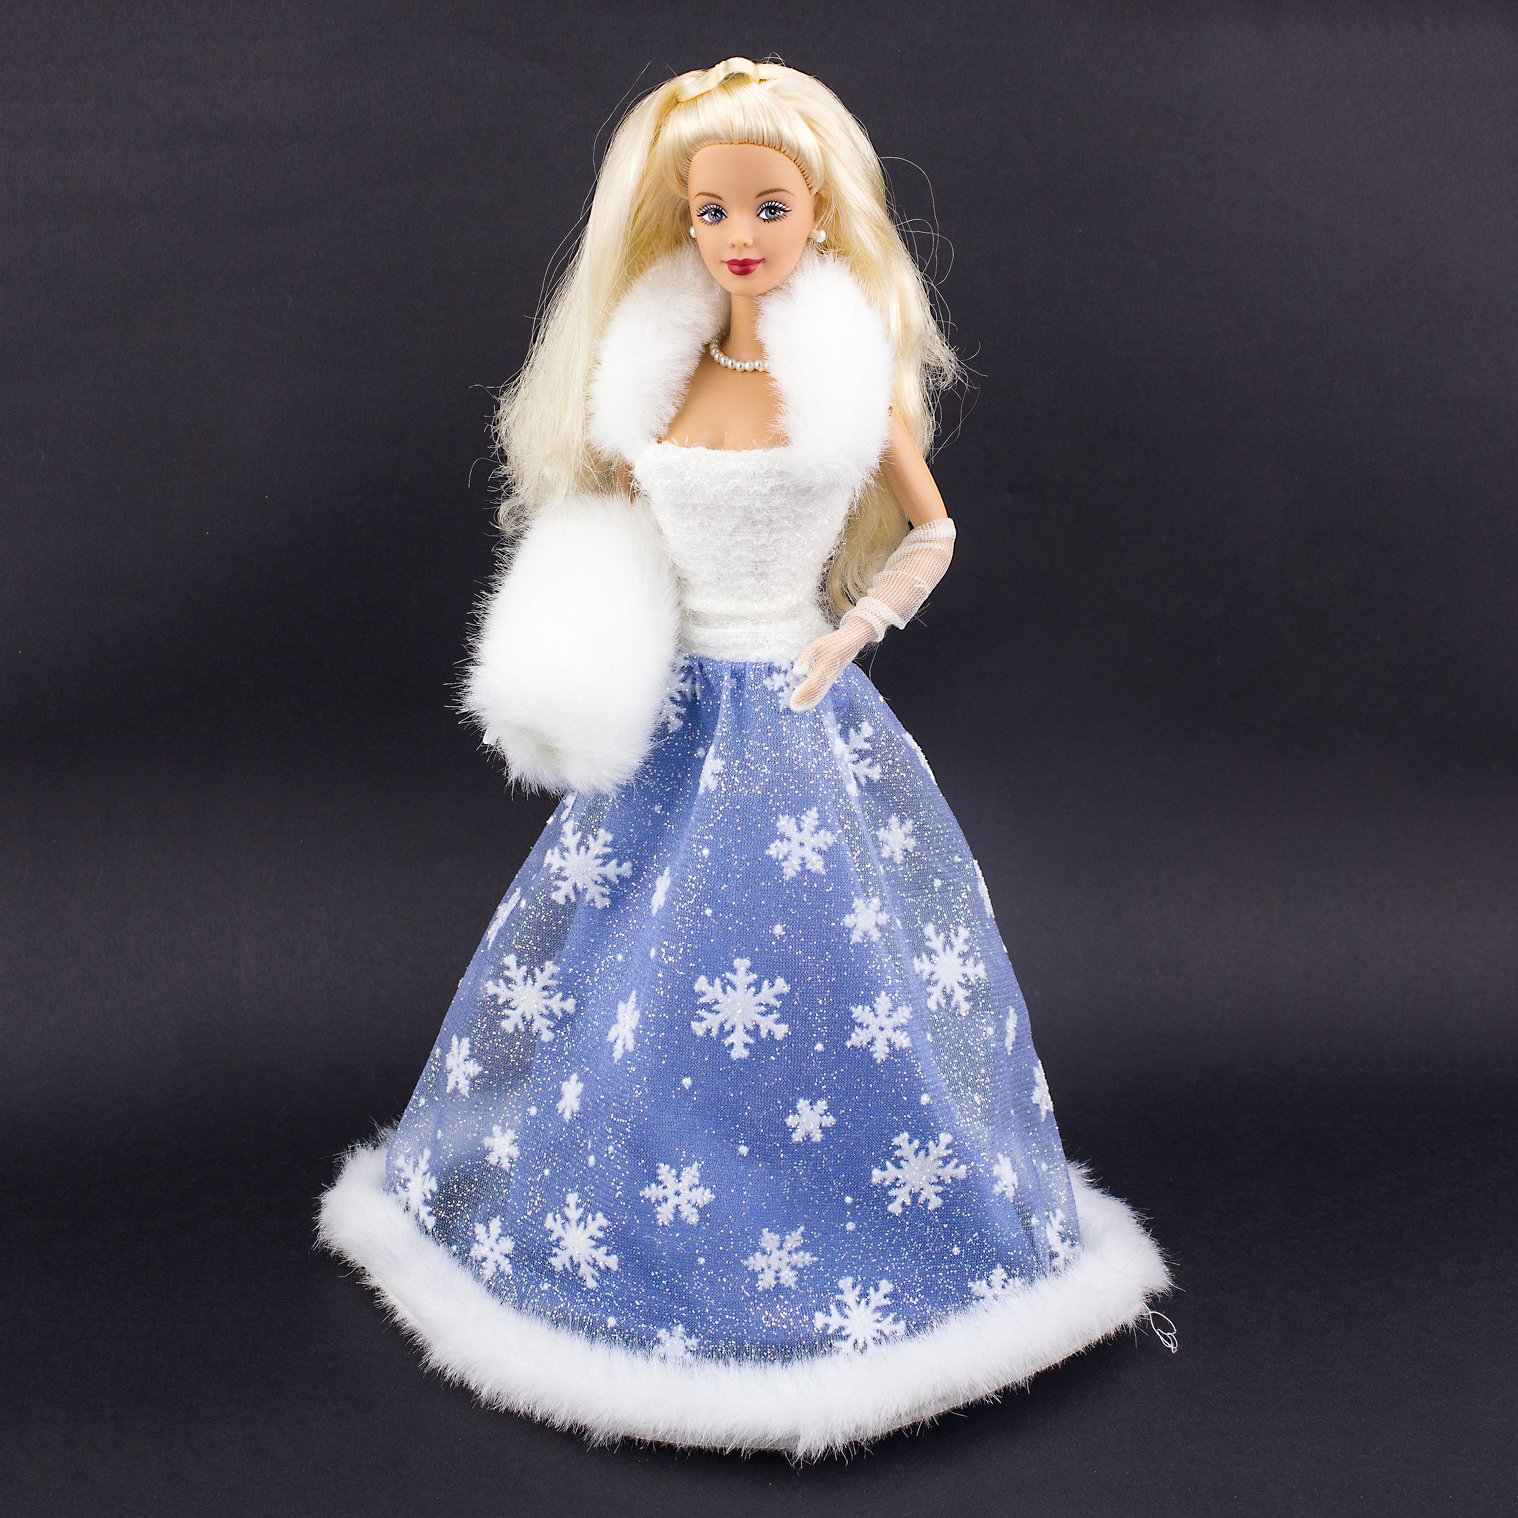 Boneca Barbie Special Edition Snow Sensation - Mattel (Removida da Caixa)